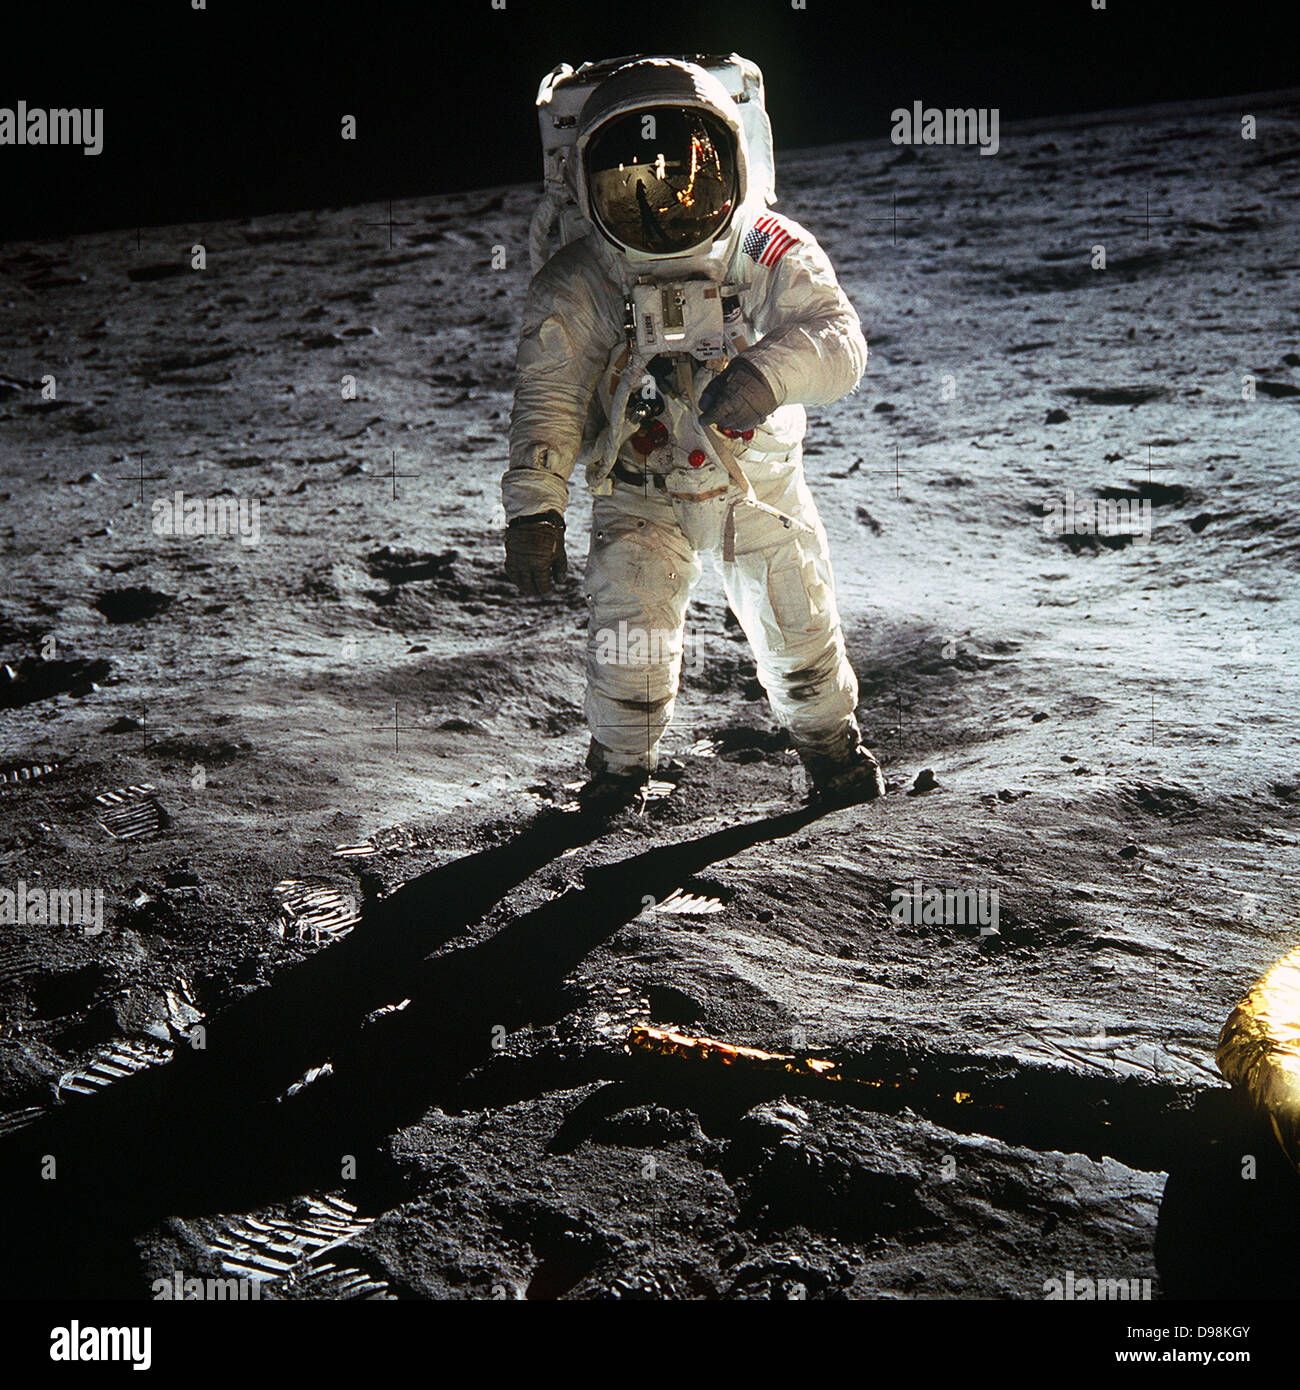 Astronaut Buzz Aldrin passeggiate sulla superficie della luna vicino alla gamba del modulo lunare Eagle durante la missione Apollo 11. Il comandante della missione Neil Armstrong ha preso questa fotografia con un 70mm superficie lunare della fotocamera. Mentre gli astronauti Armstrong e Aldrin esplorato il Mare della Tranquillità regione della luna, astronauta Michael Collin è rimasto con il comando e moduli di servizio in orbita lunare Foto Stock